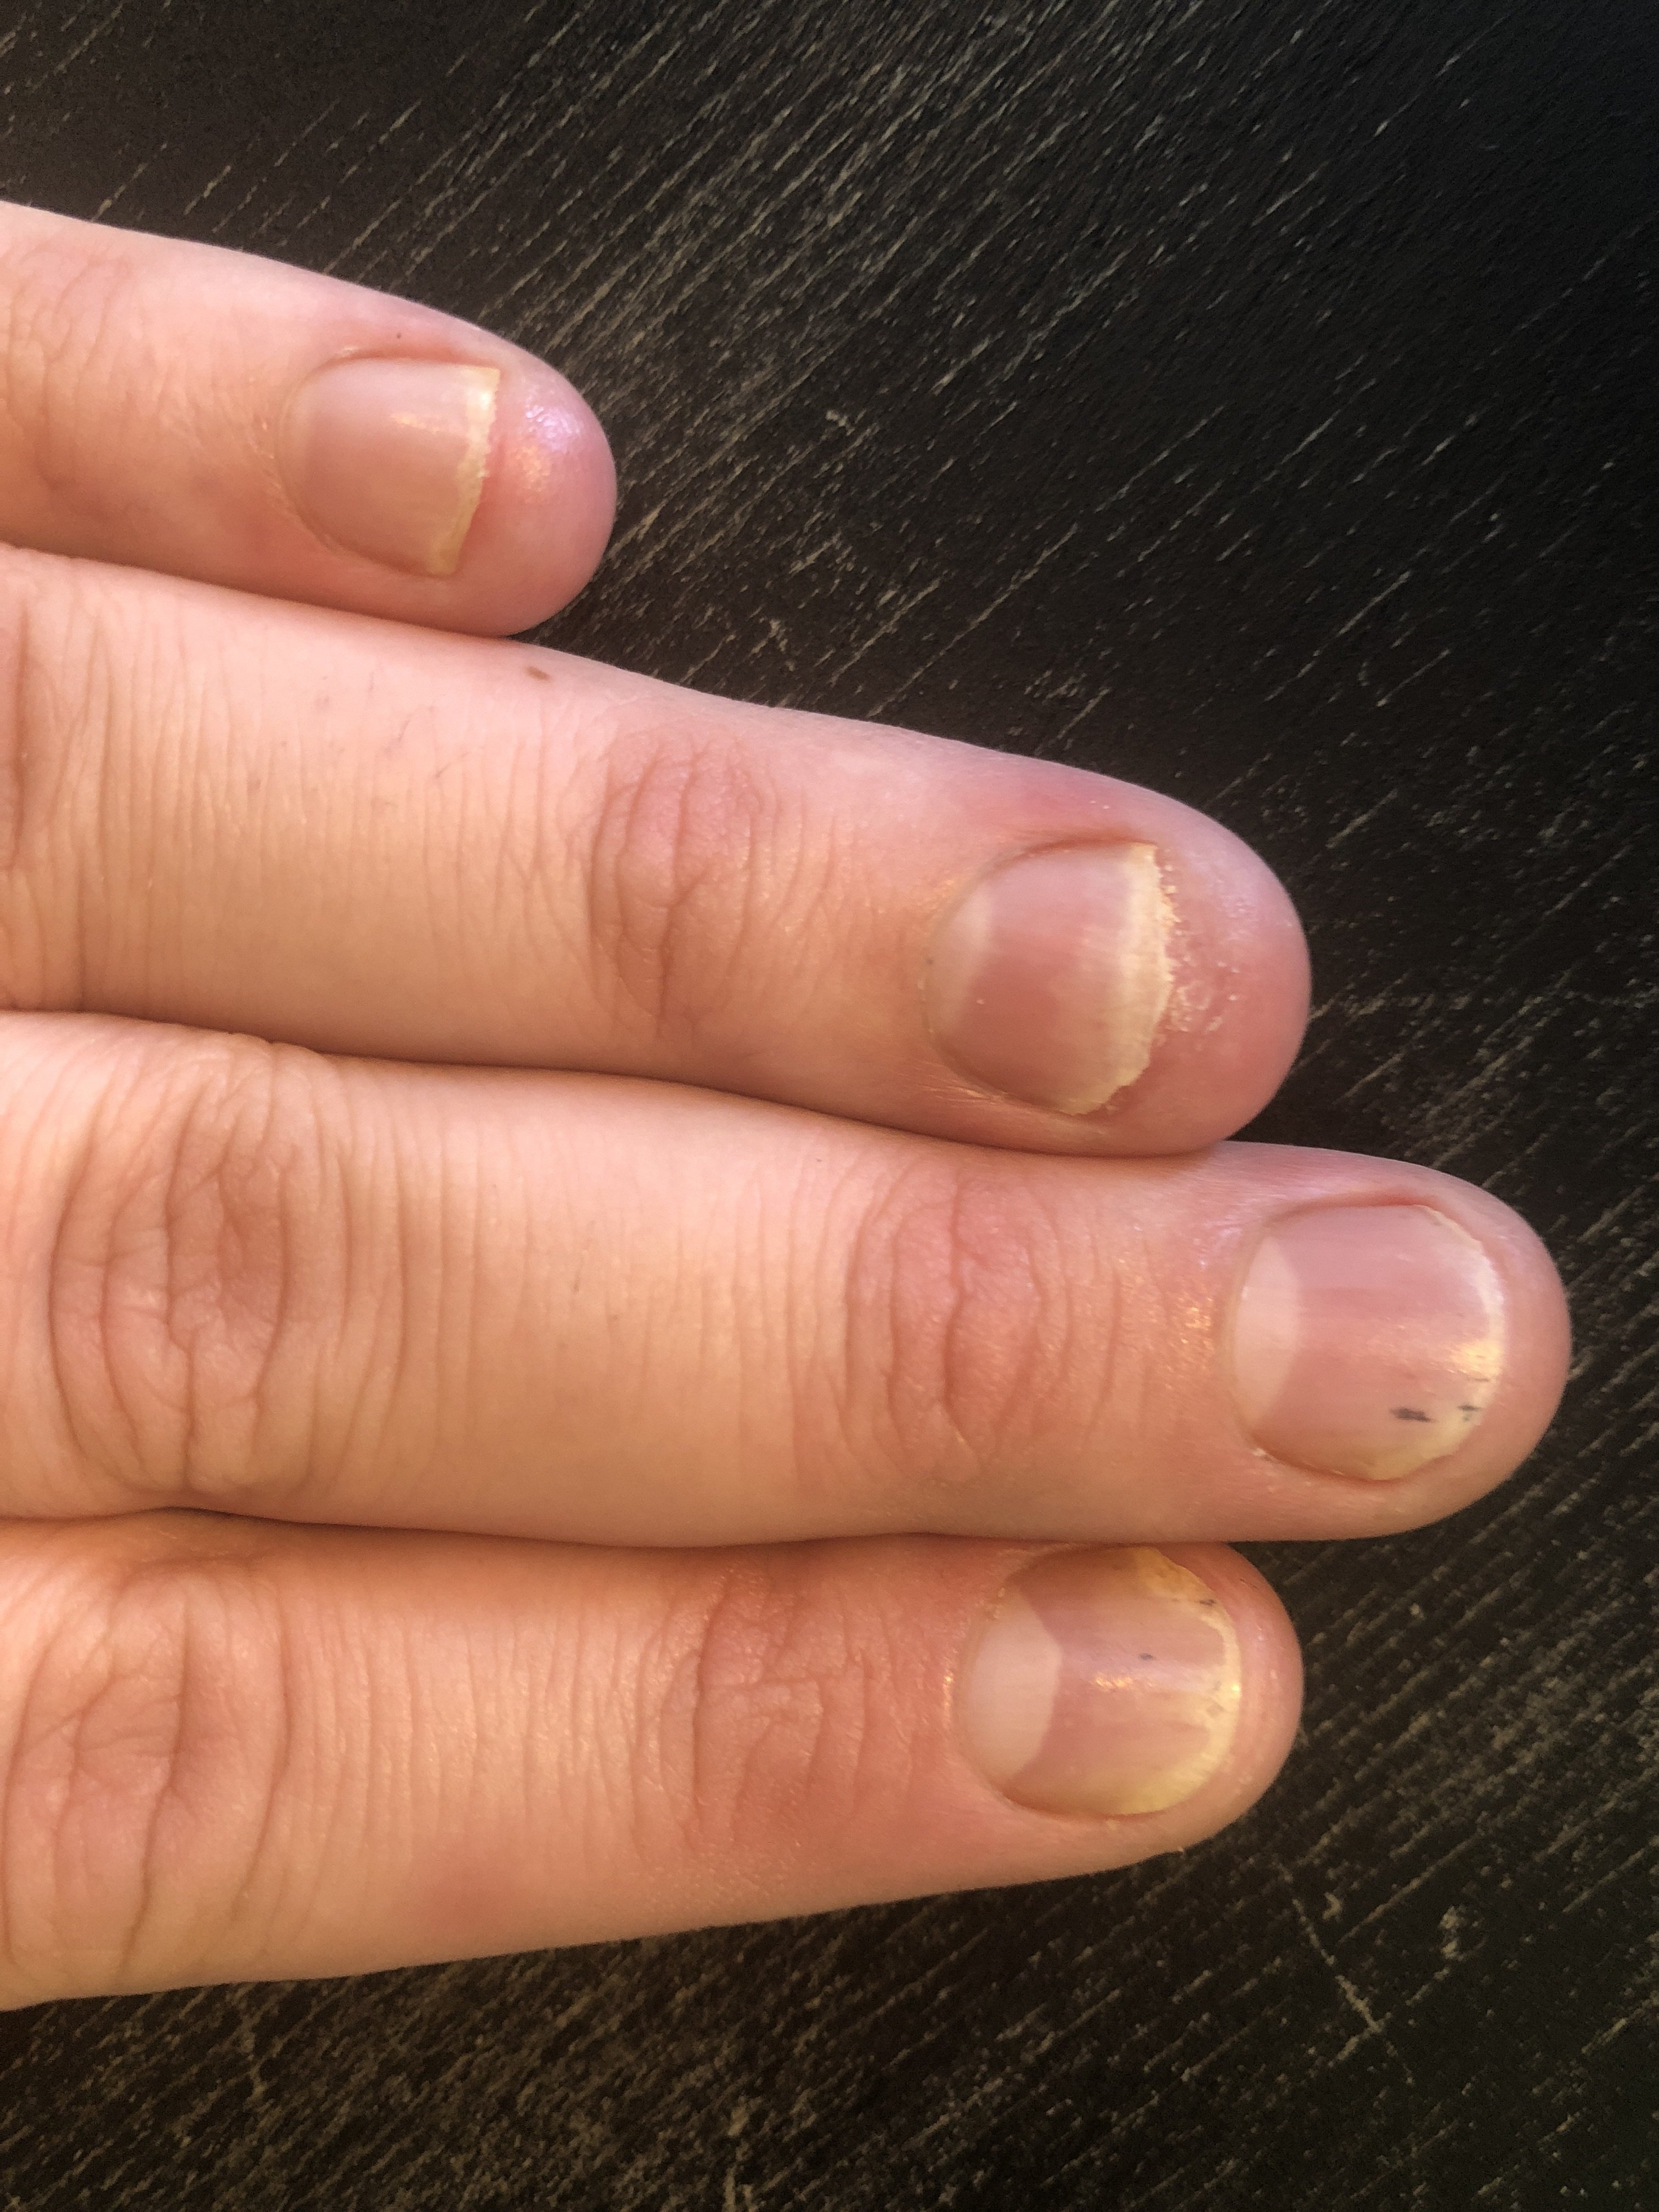 О чем сигнализируют черные полоски на ногтях? Лечение и профилактика проблемы